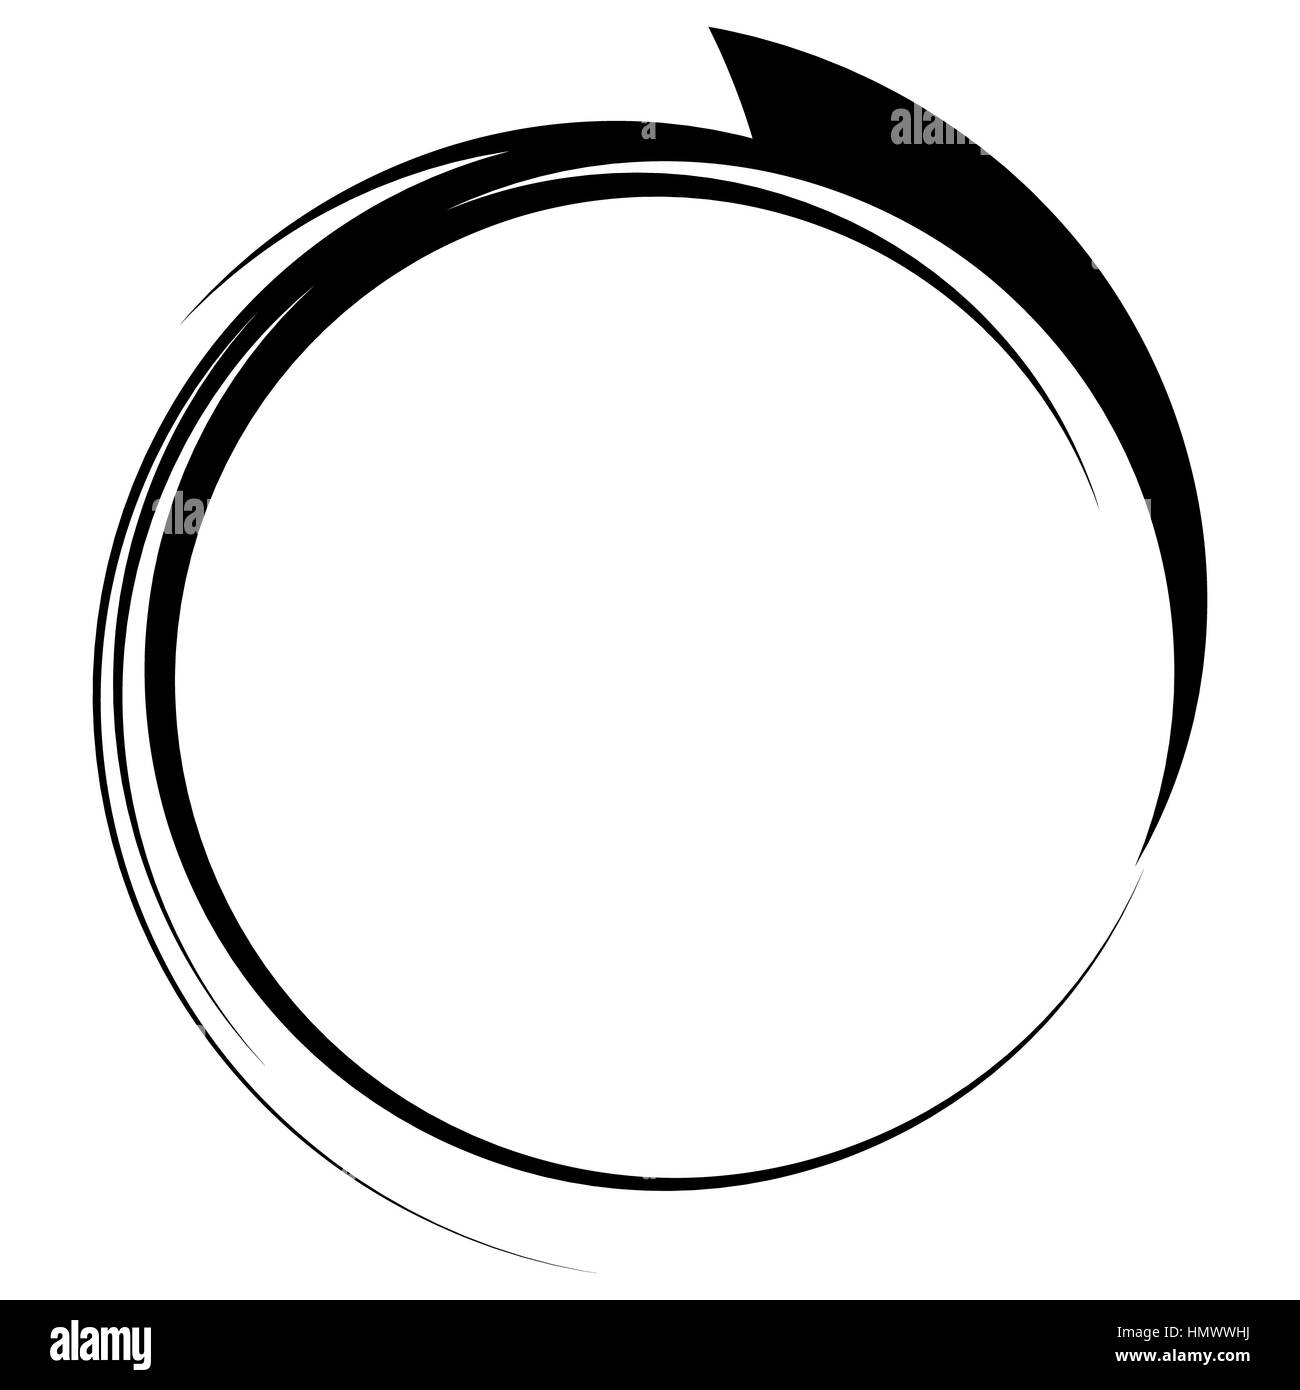 Círculo con dinámico marco línea de Nike. Elemento circular monocroma Fotografía de stock Alamy